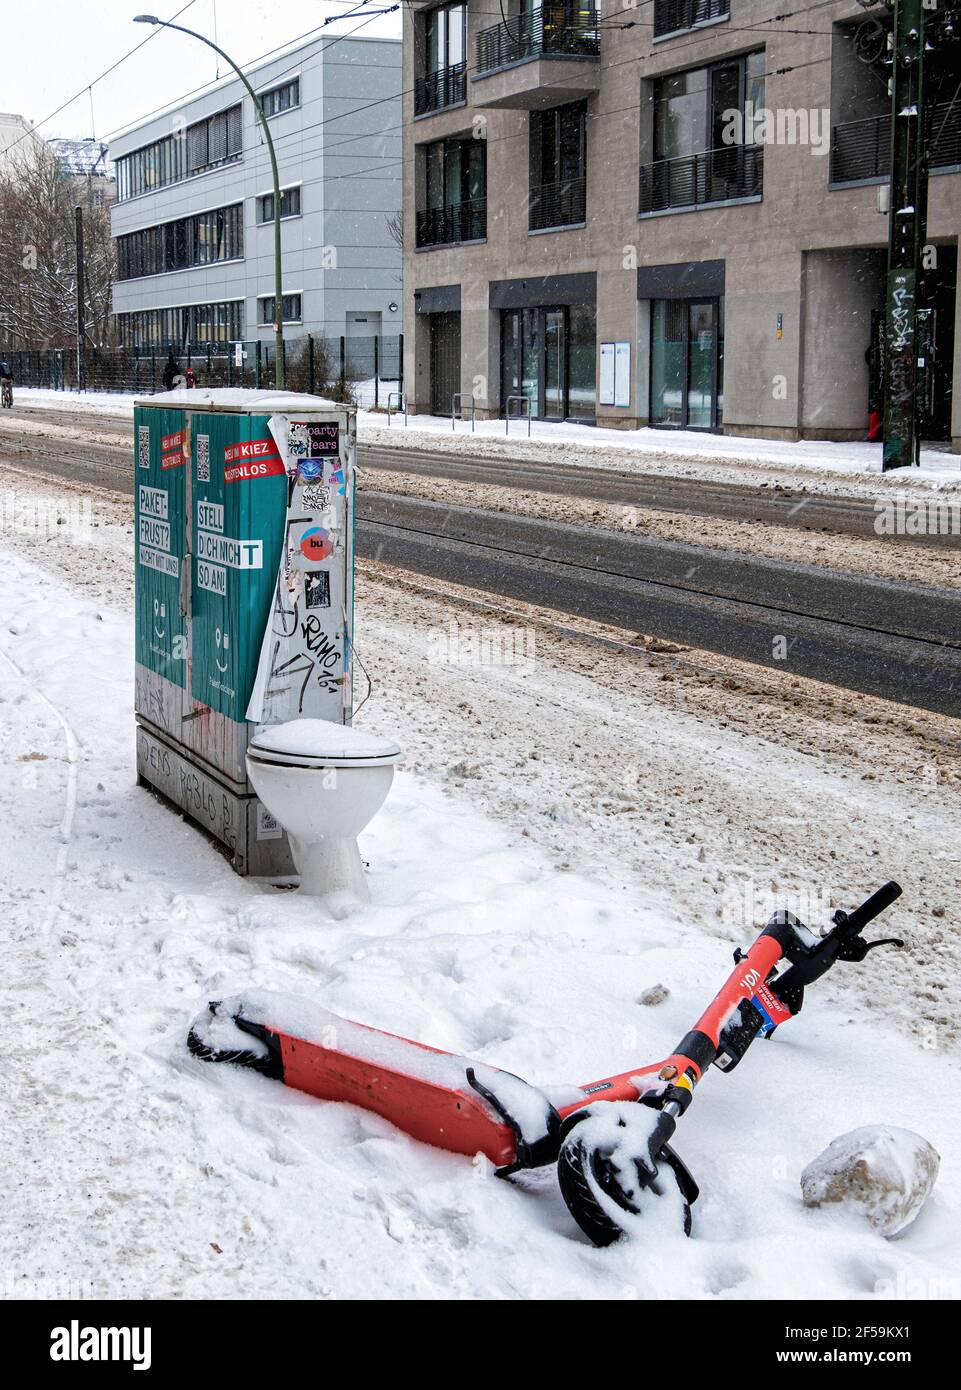 Jeté de toilette en porcelaine et abandonné VOI scooter électrique sur un pavillon urbain, Mitte, Berlin, Allemagne Banque D'Images